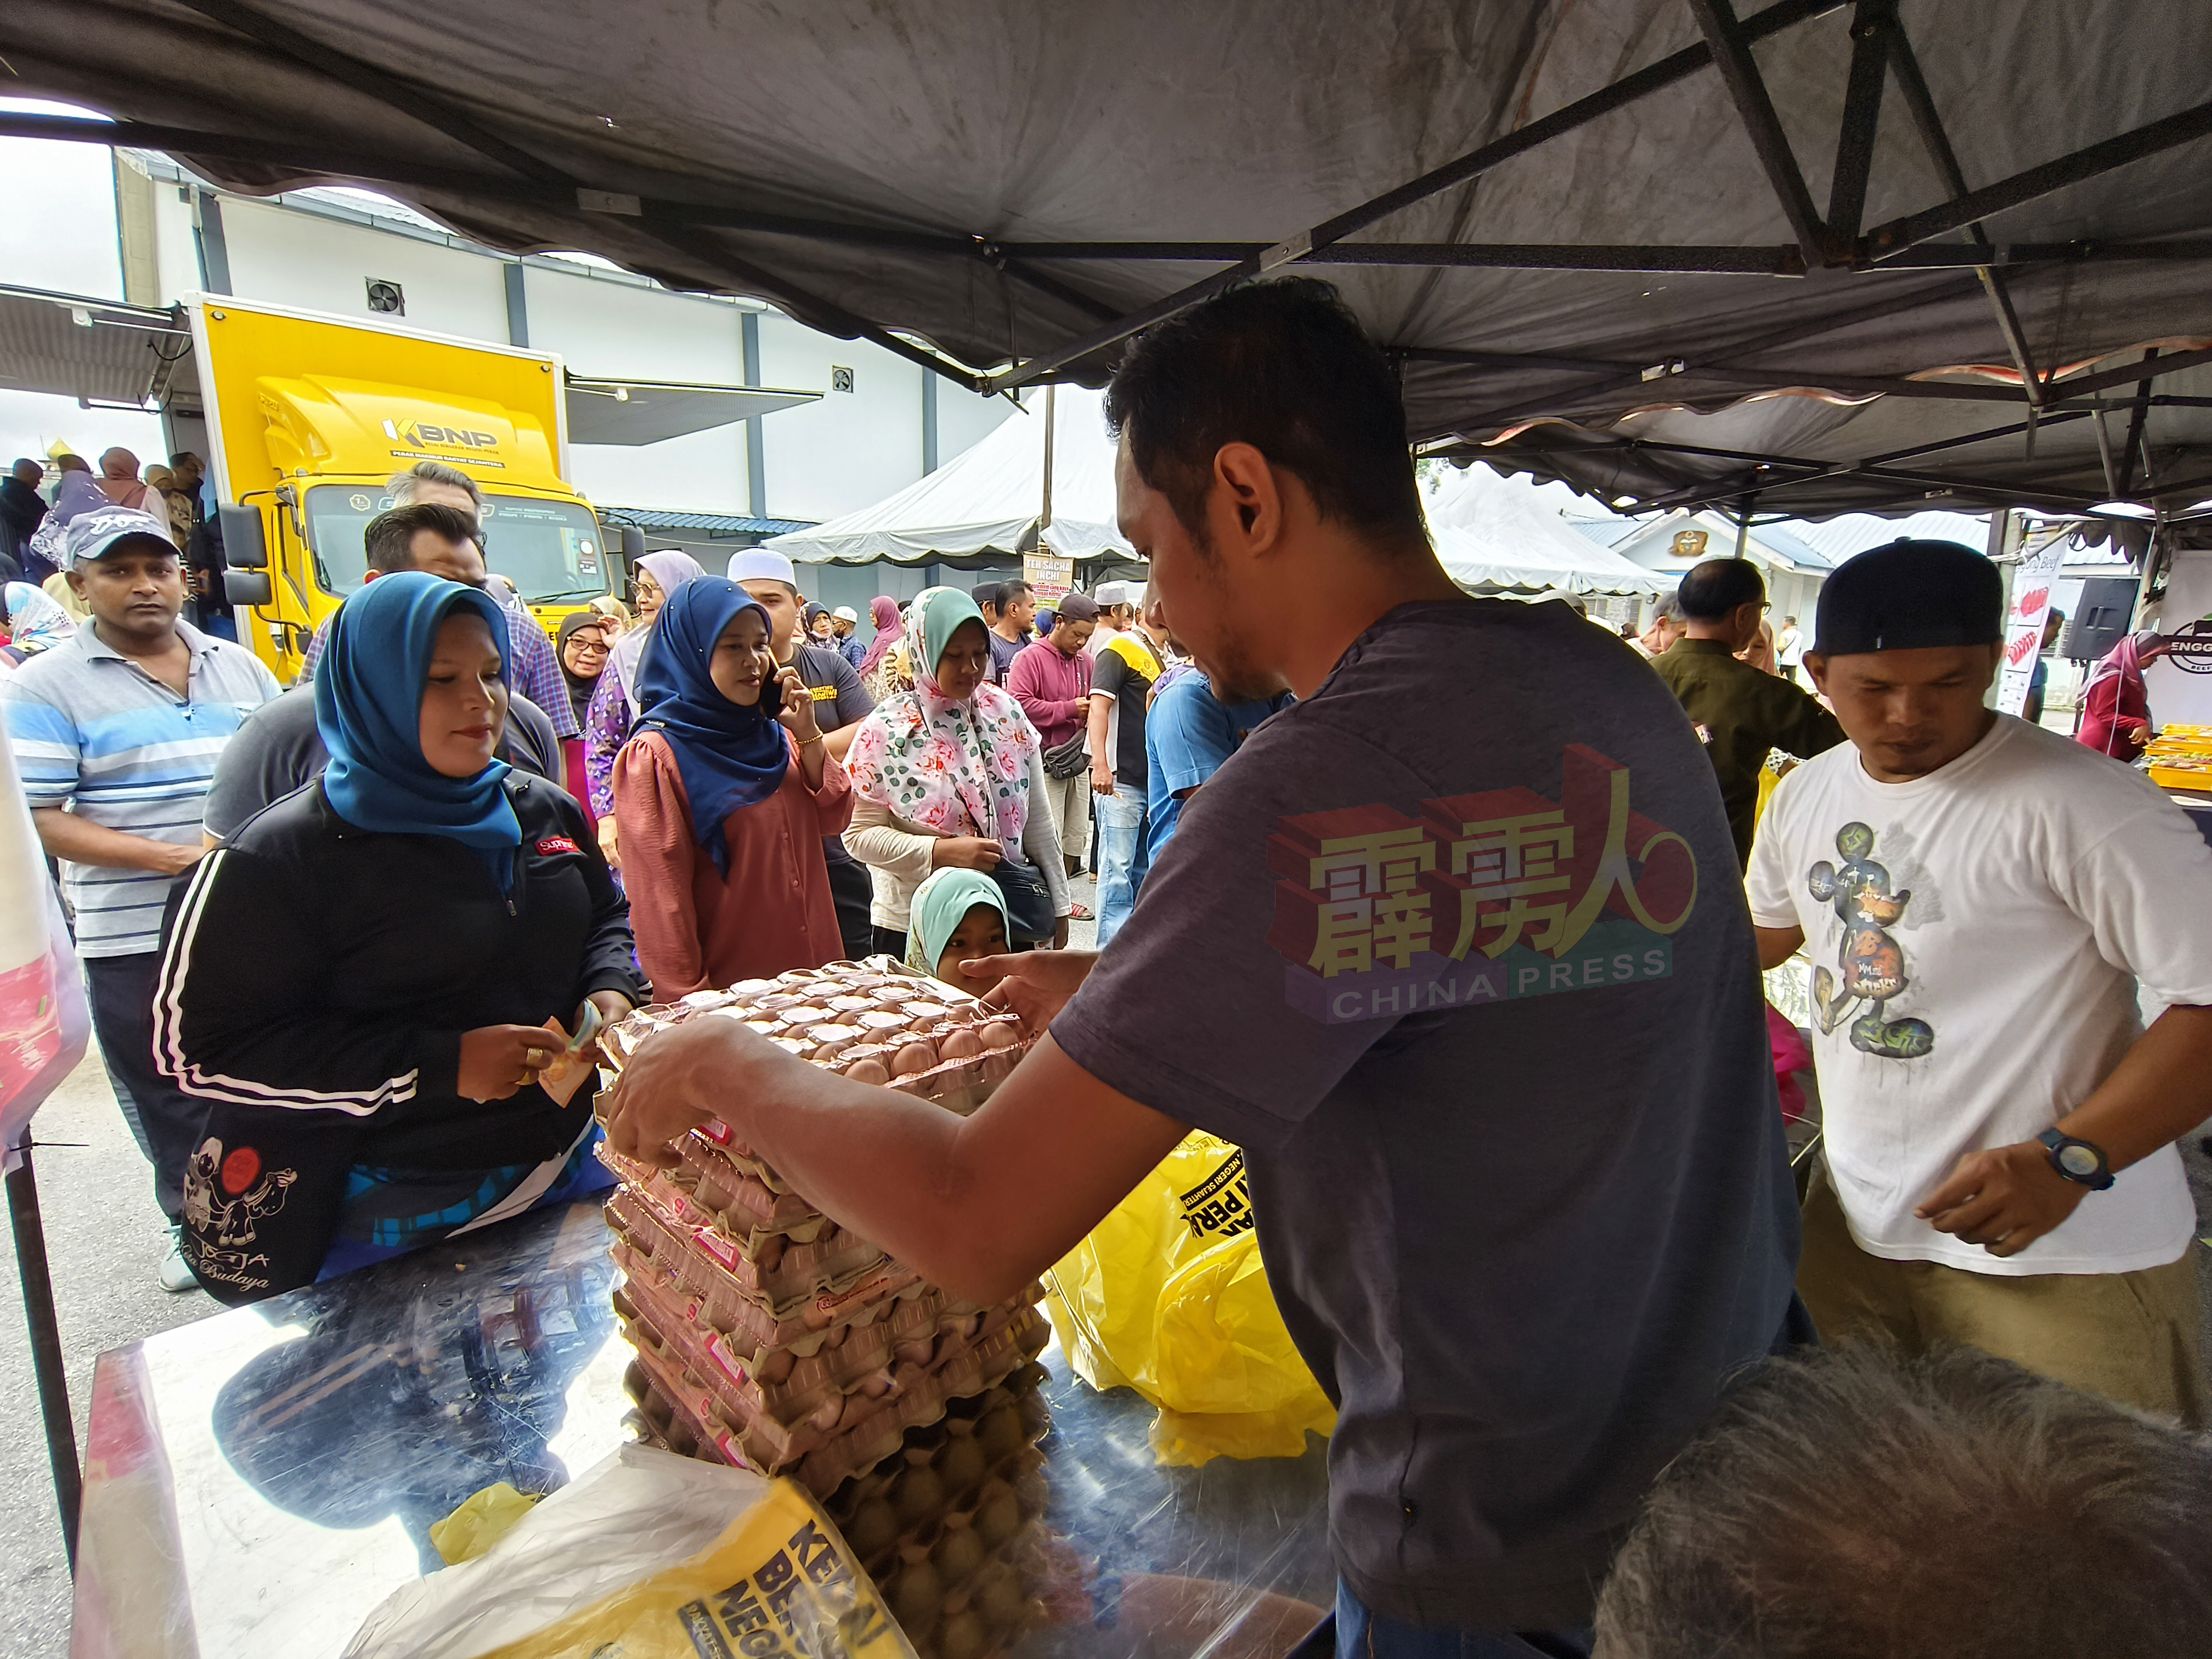 配合霹雳州农业机构50週年庆典，当局也在会客日上举办高达50％折扣的廉价促销活动，民众排队购买半价鸡蛋。